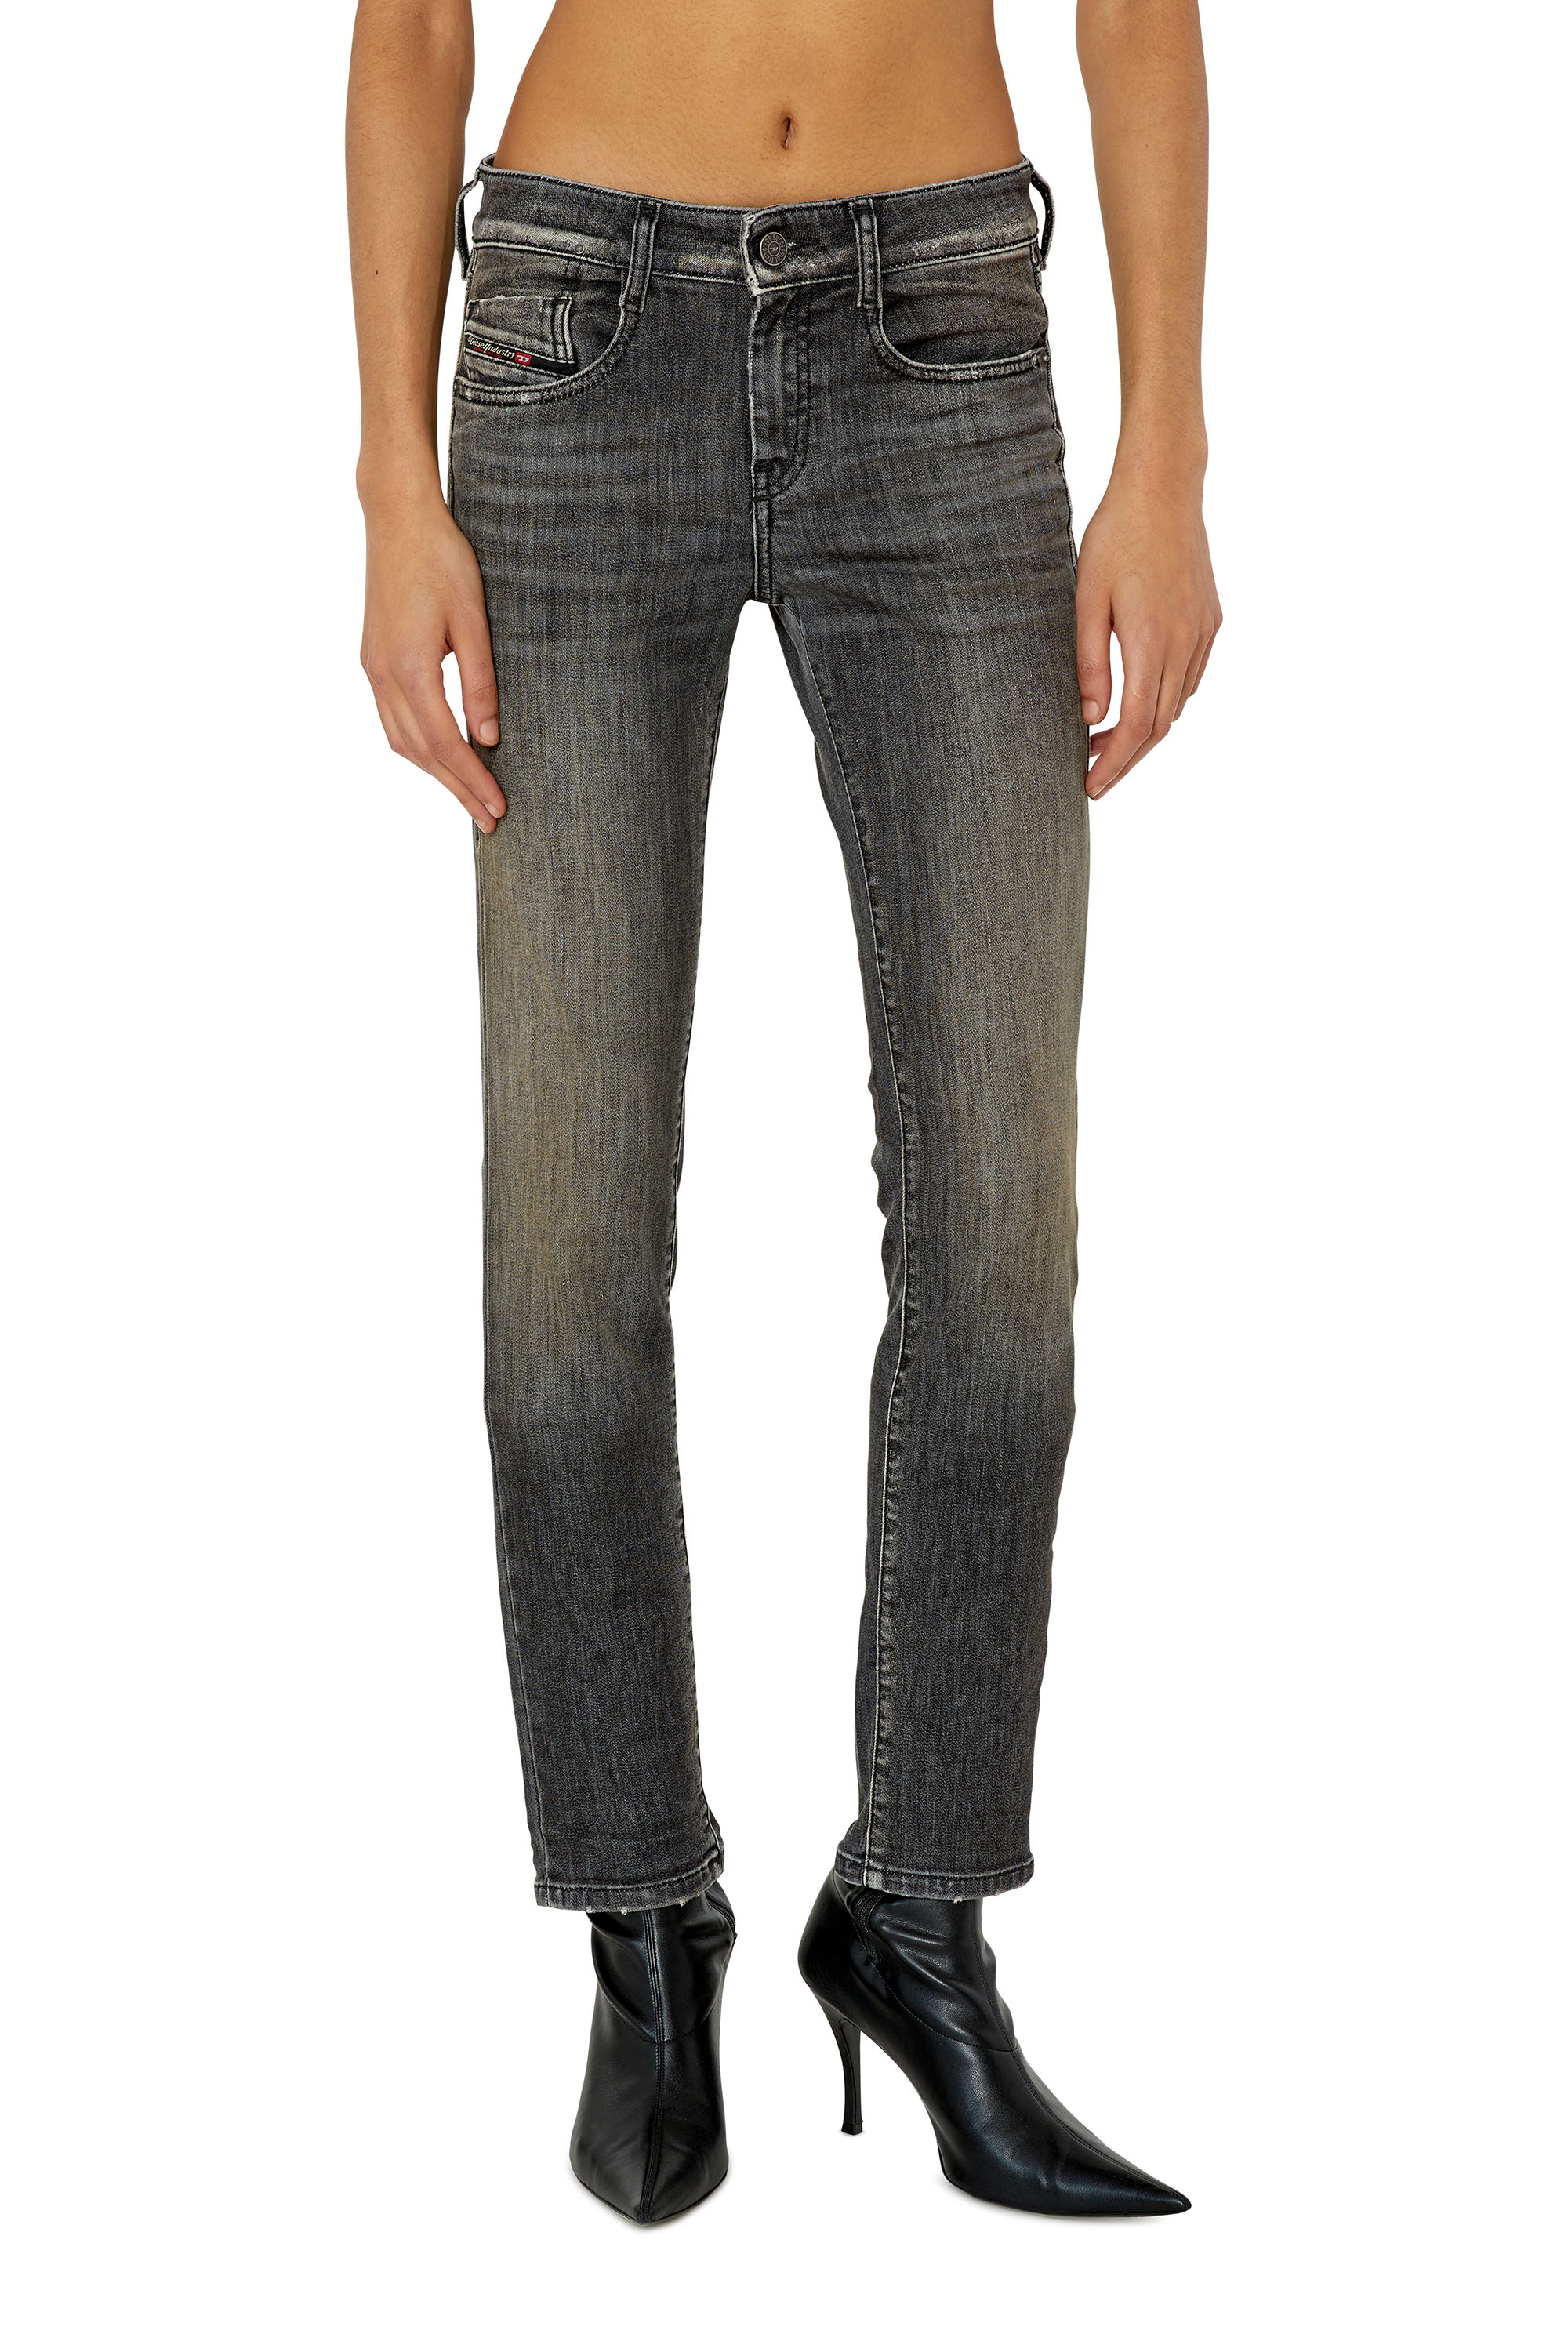 Diesel - D-Ollies JoggJeans® 09F01 Slim, Black/Dark grey - Image 1